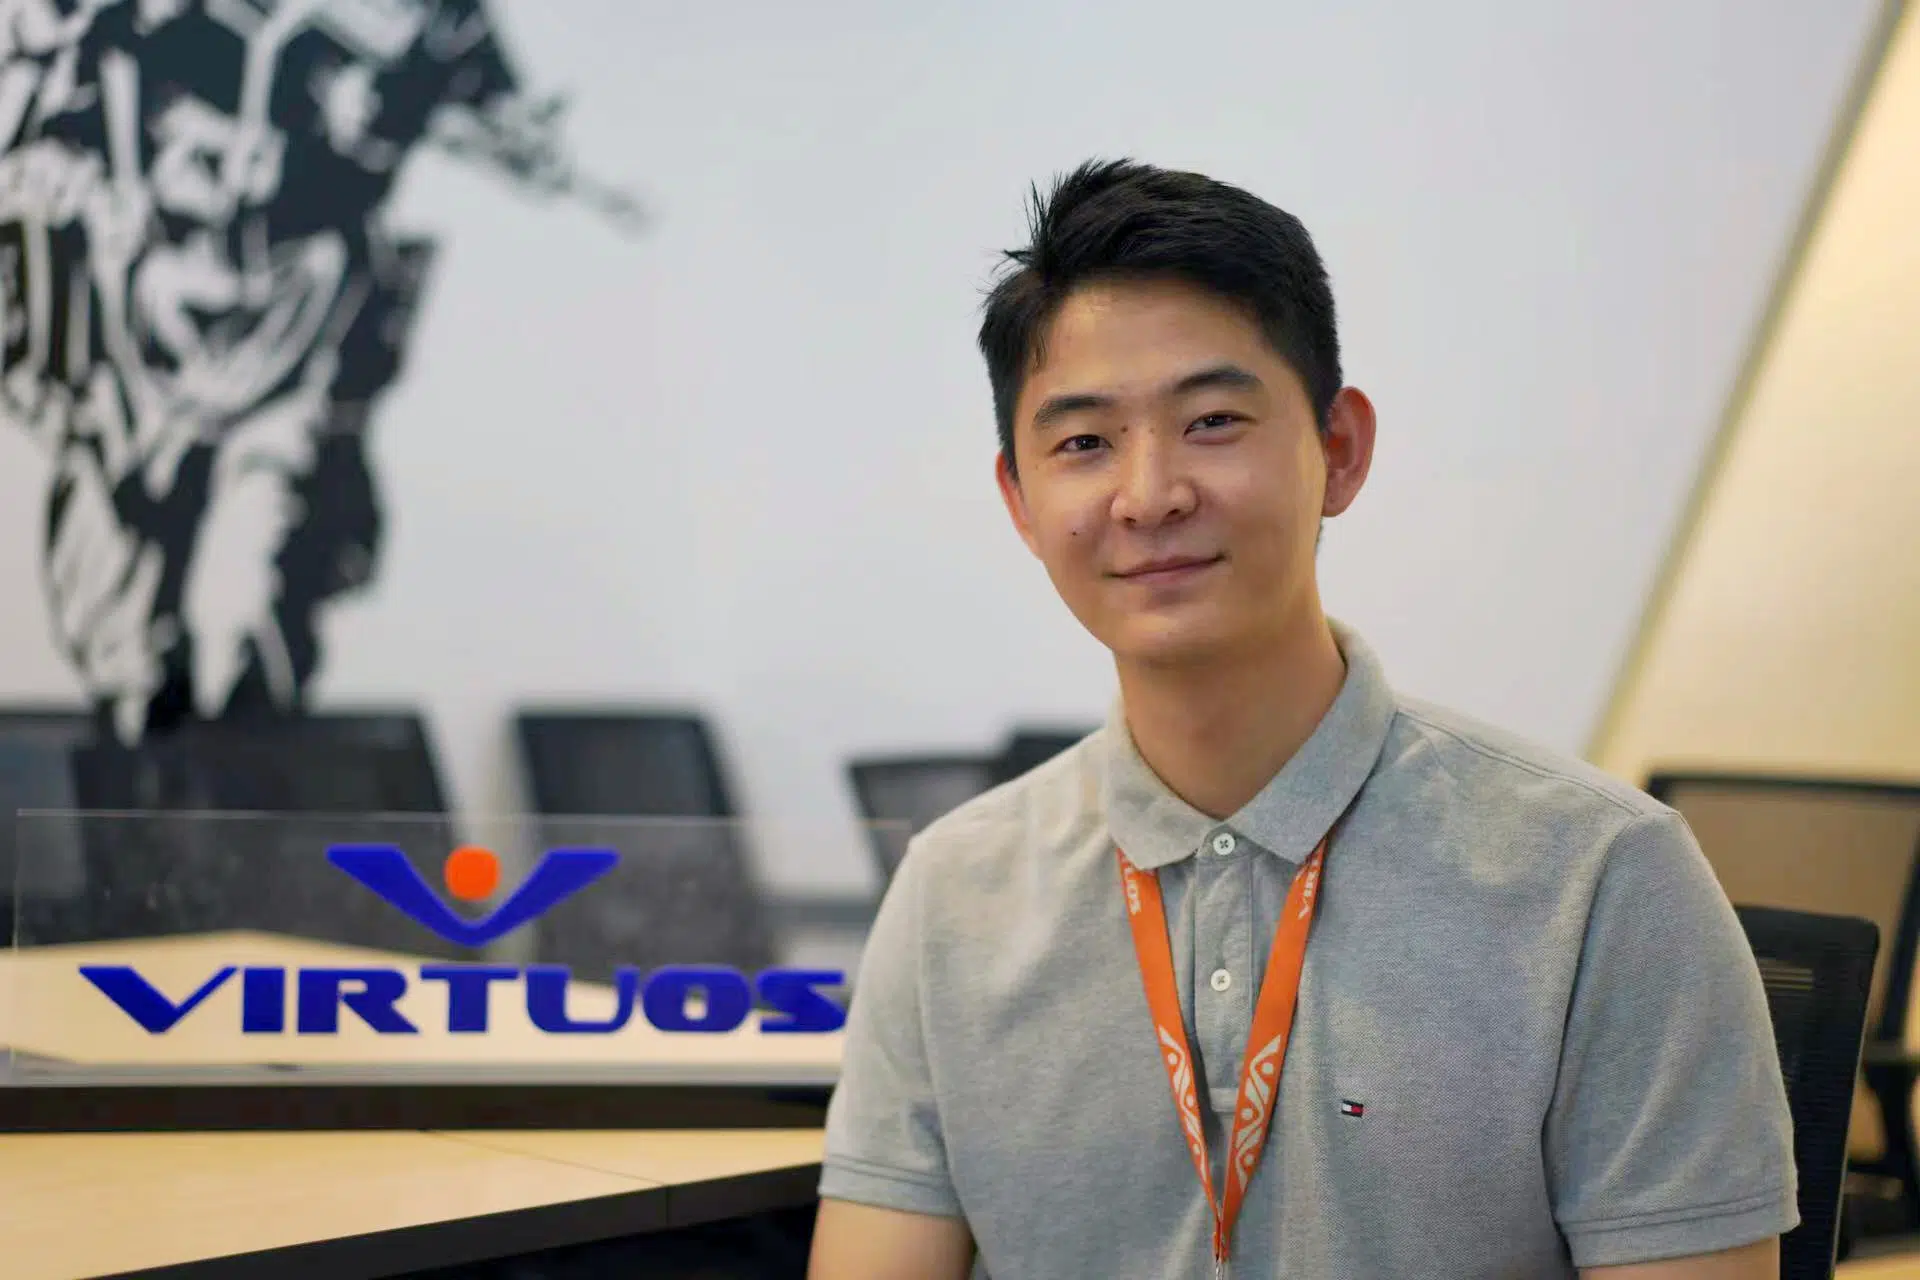 [포모스] 인터뷰: “글로벌 제작사 버추어스가 한국 게임사와 협업하는 방법”